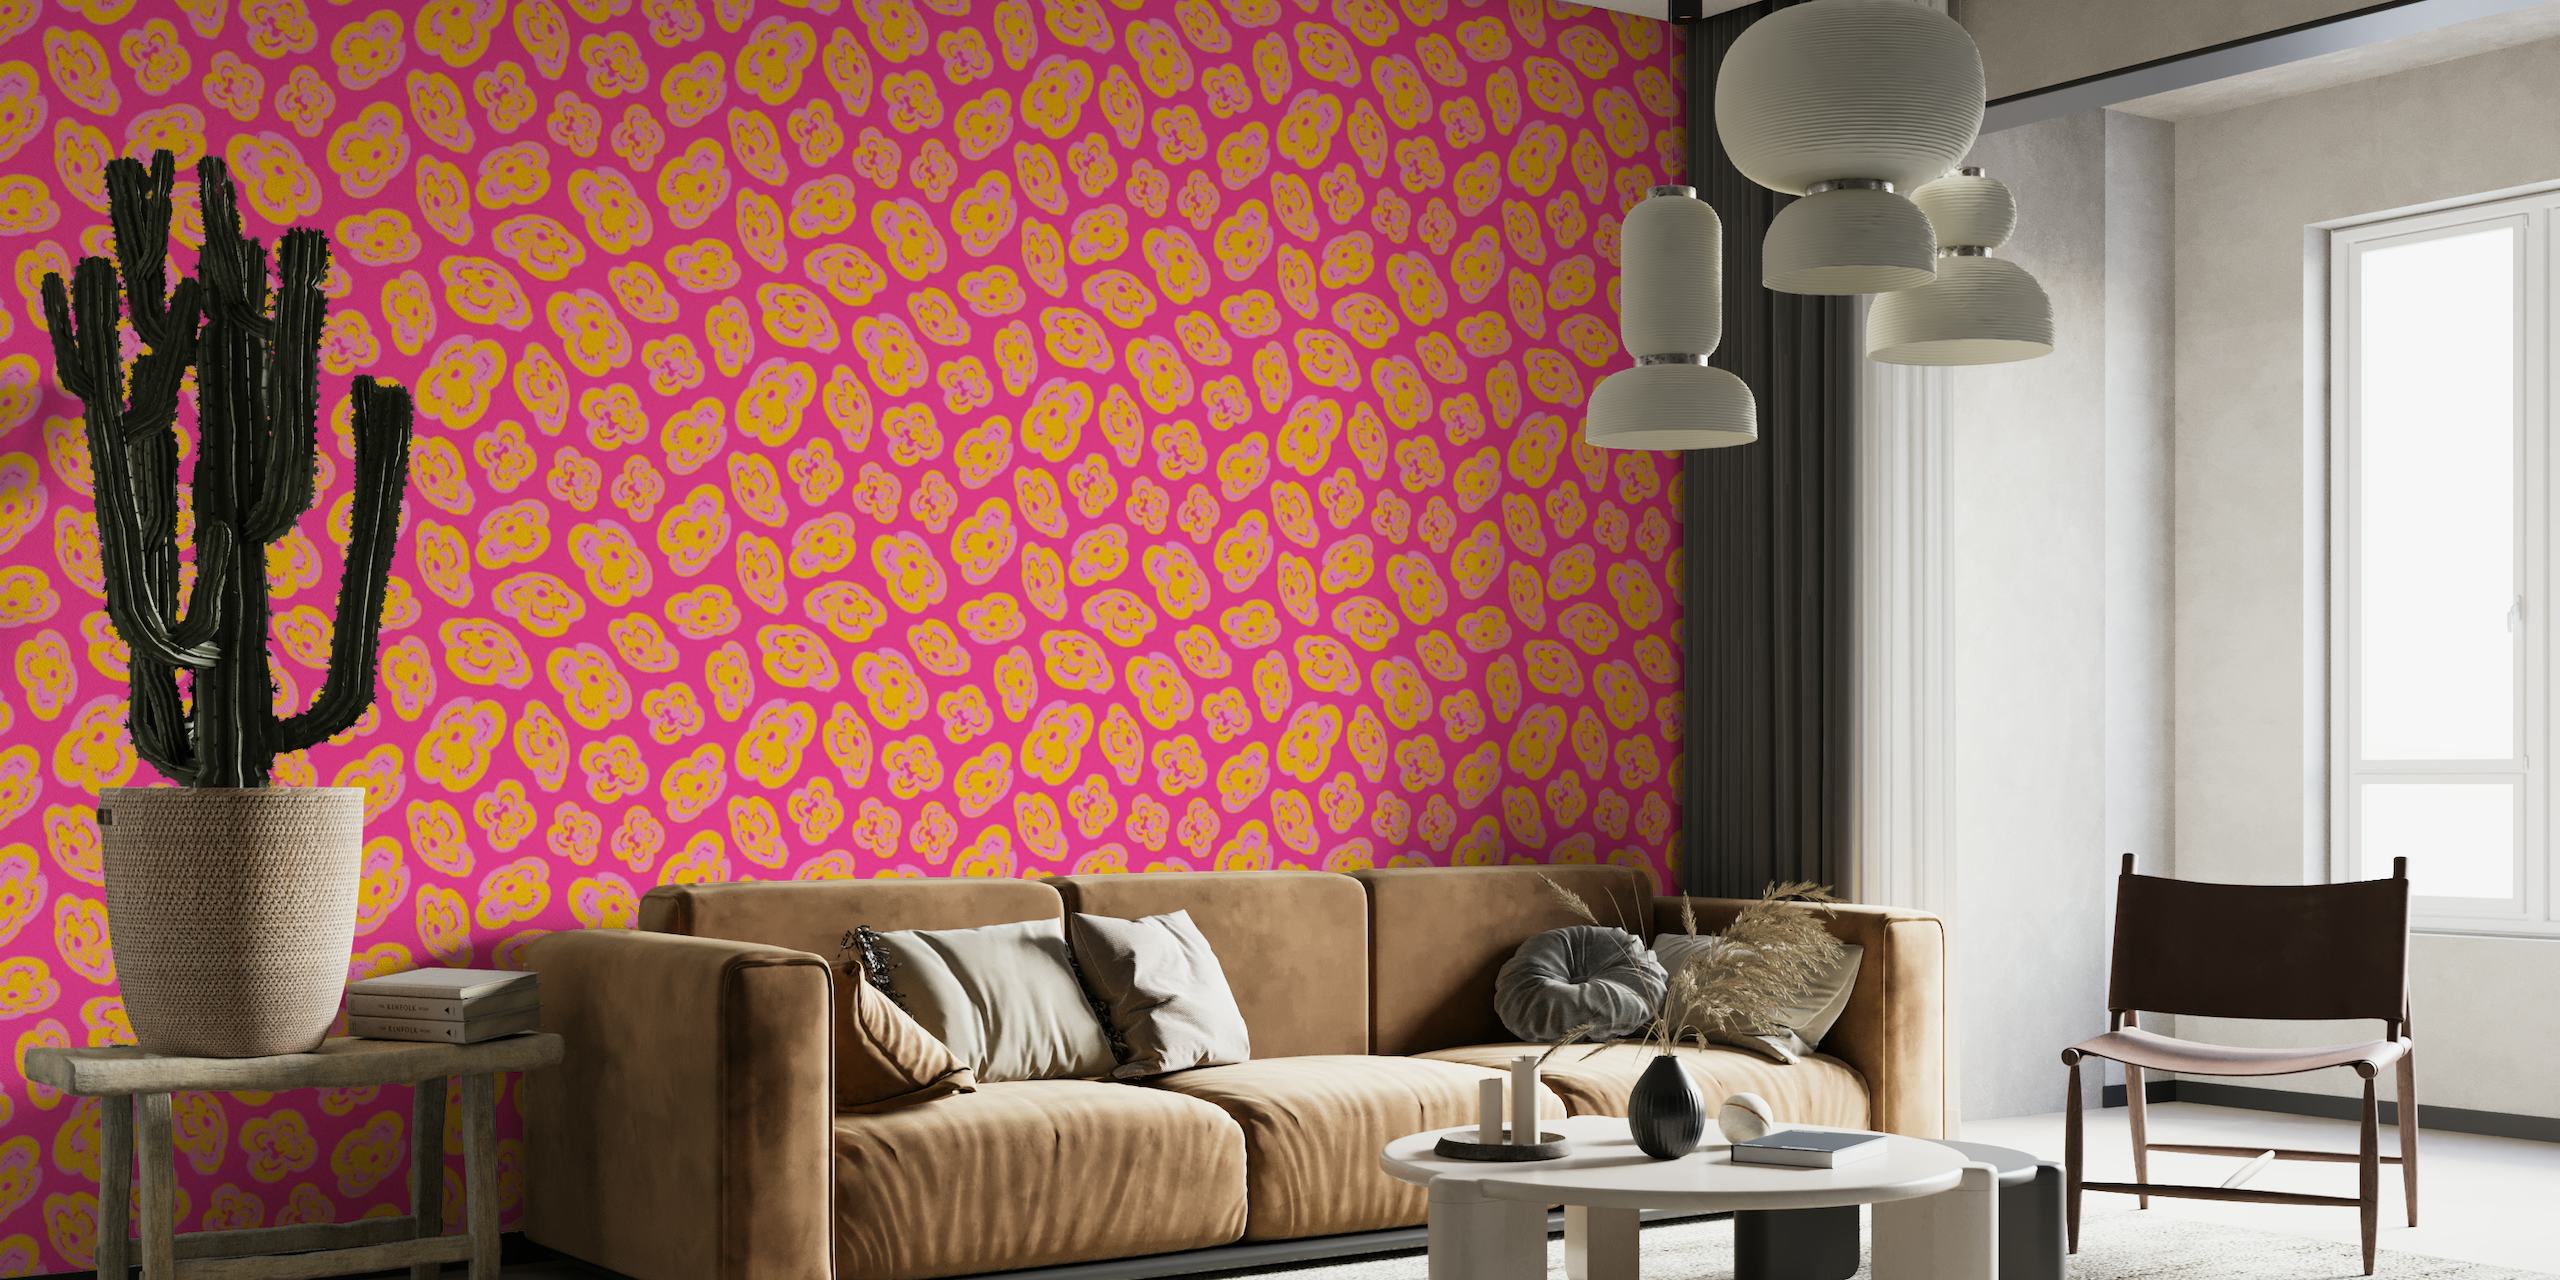 Fotomural patrones abstractos de lirios flotantes en tonos amarillos y rosas sobre un fondo fucsia